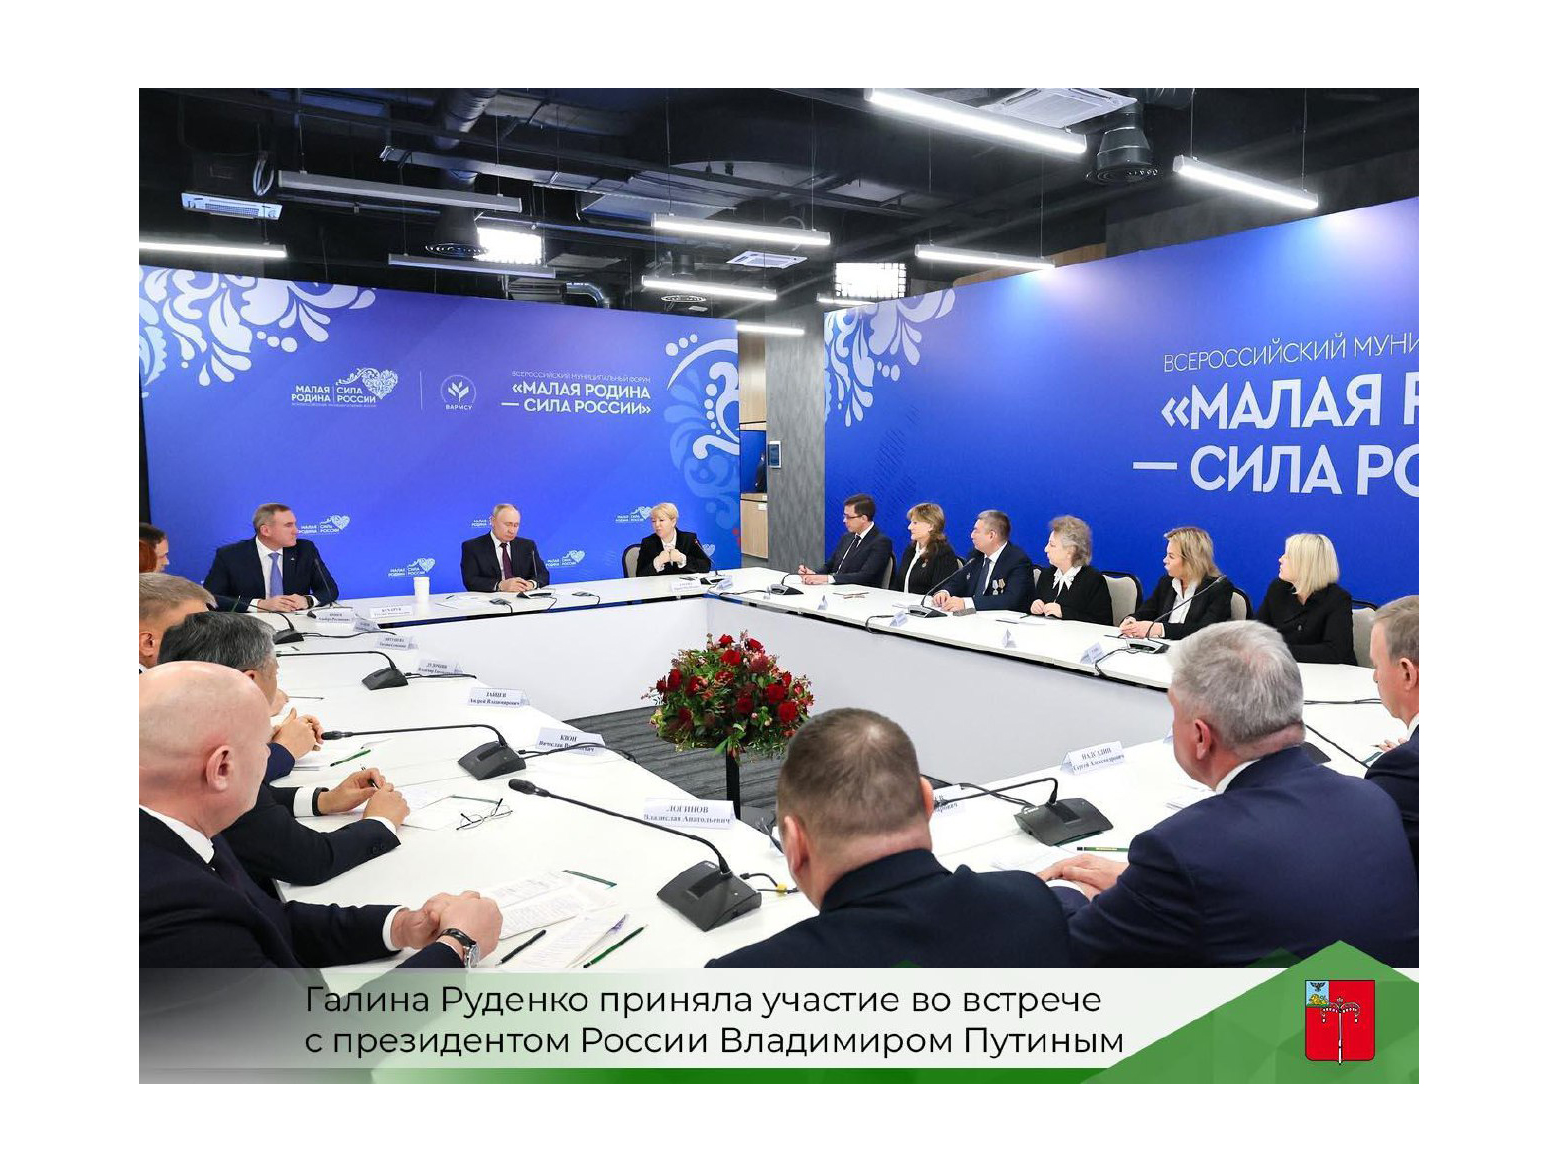 Галина Руденко приняла участие во встрече с президентом России Владимиром Путиным.